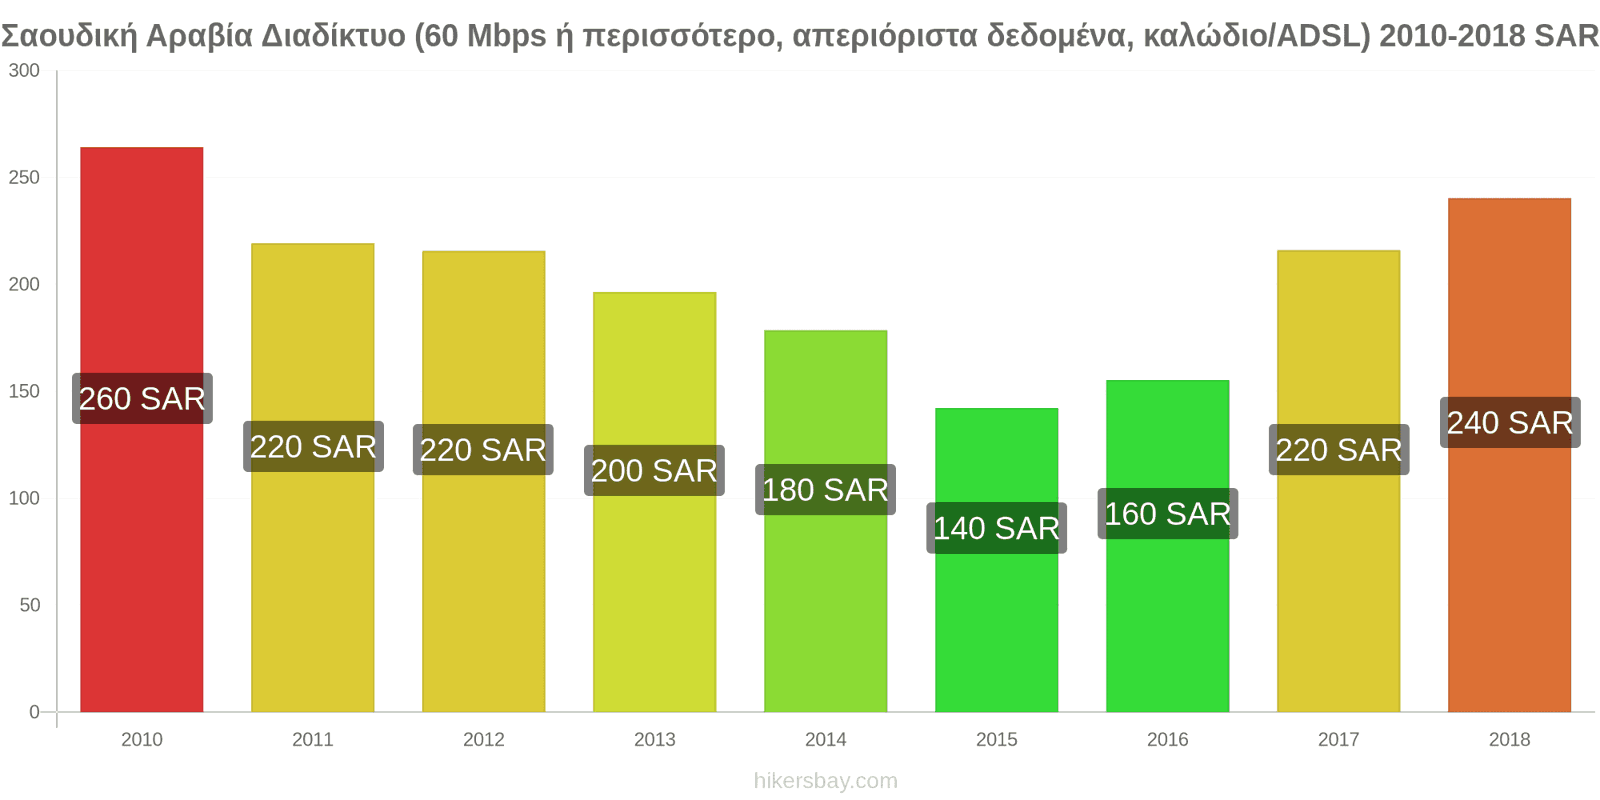 Σαουδική Αραβία αλλαγές τιμών Ίντερνετ (60 Mbps ή περισσότερο, απεριόριστα δεδομένα, καλώδιο/ADSL) hikersbay.com